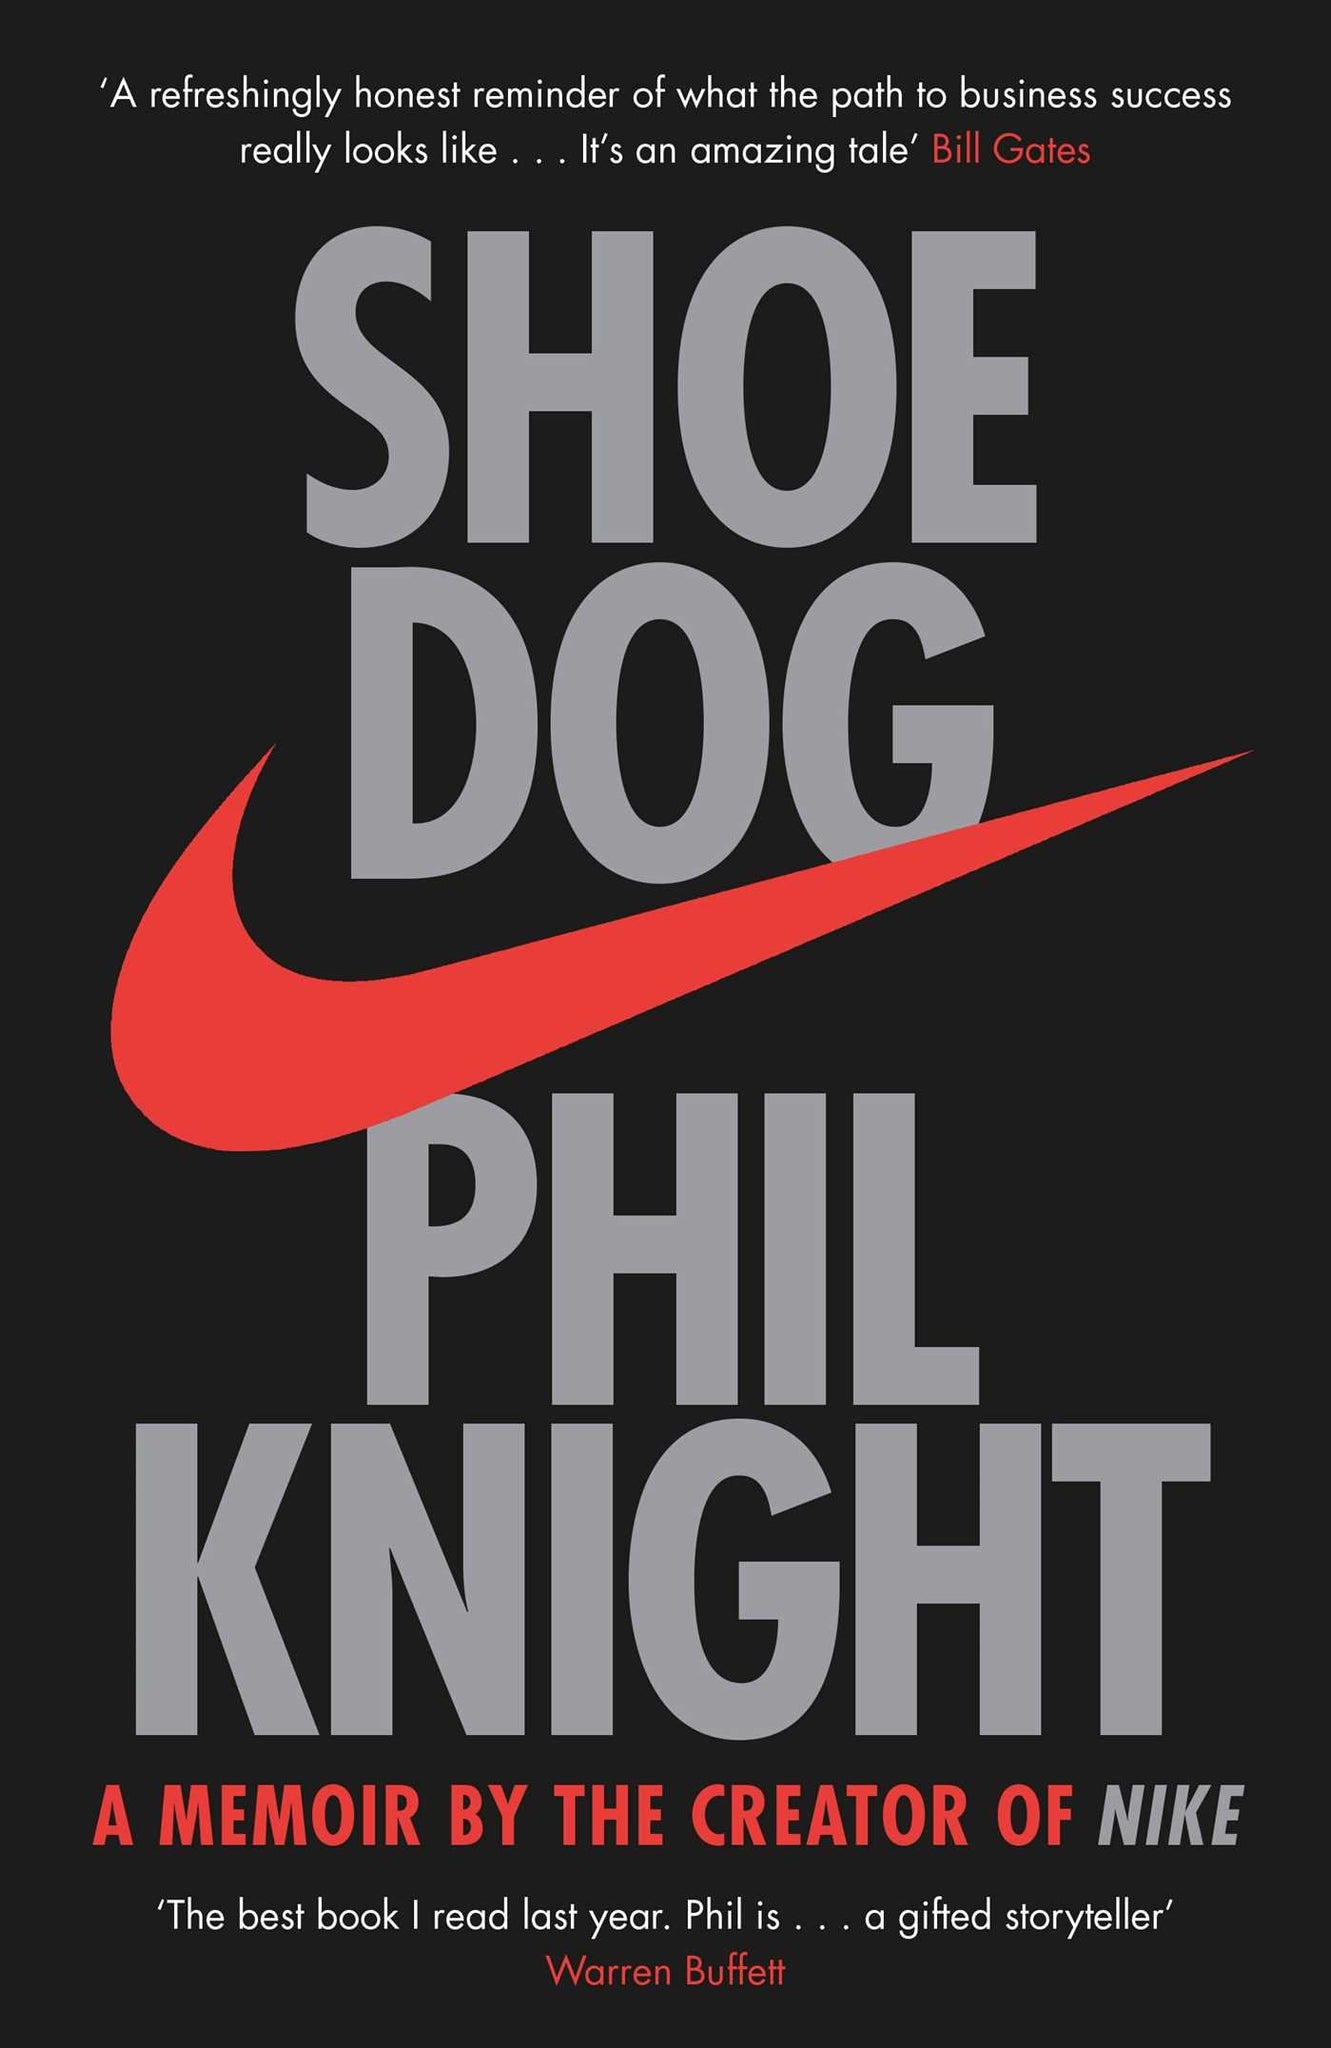 Shoe Dog: A Memoir pelo criador da Nike por Phil Knight